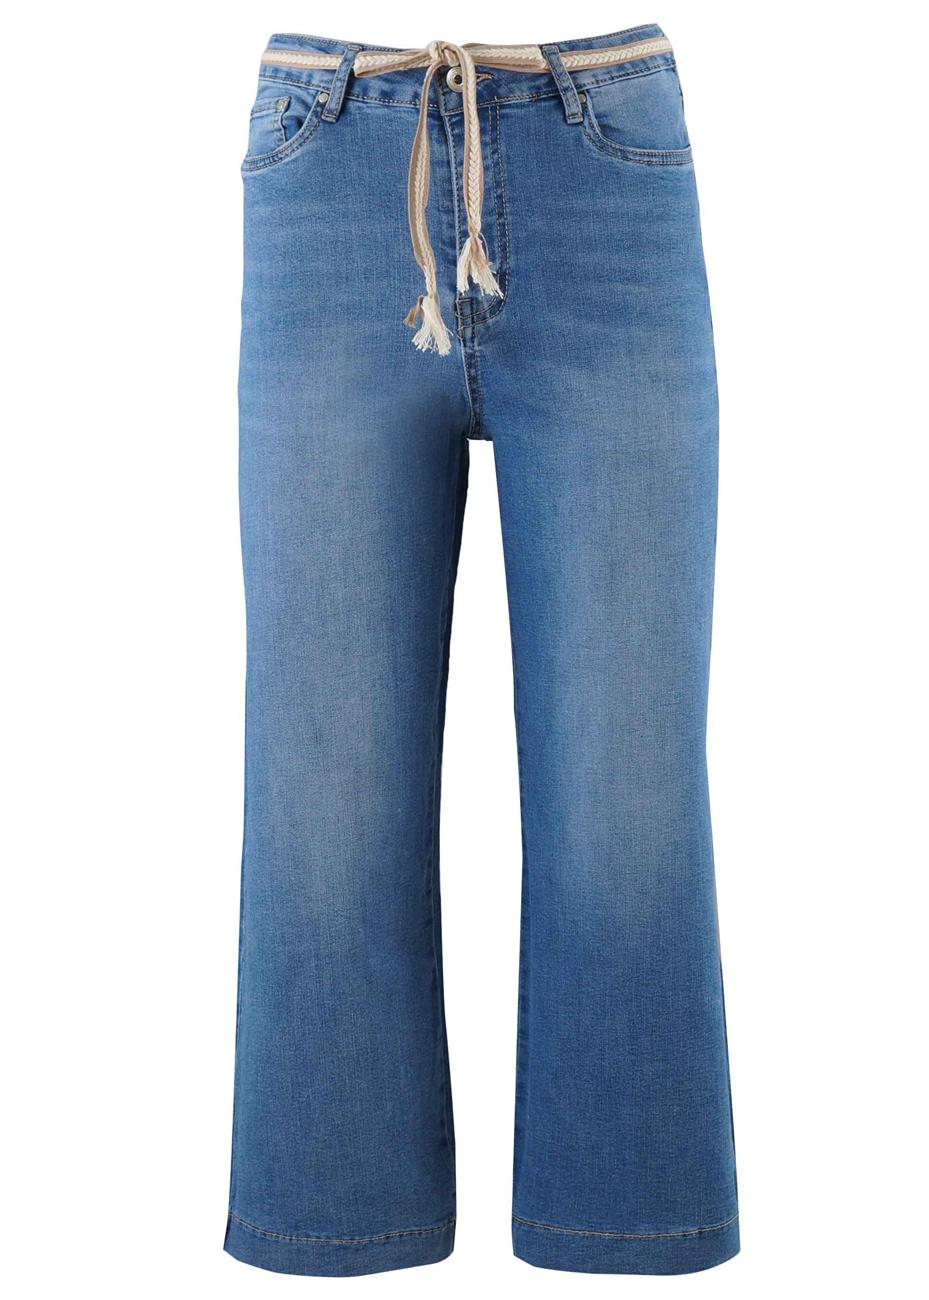 Γυναικεία jean παντελόνα crop ψηλόμεση. Denim collection